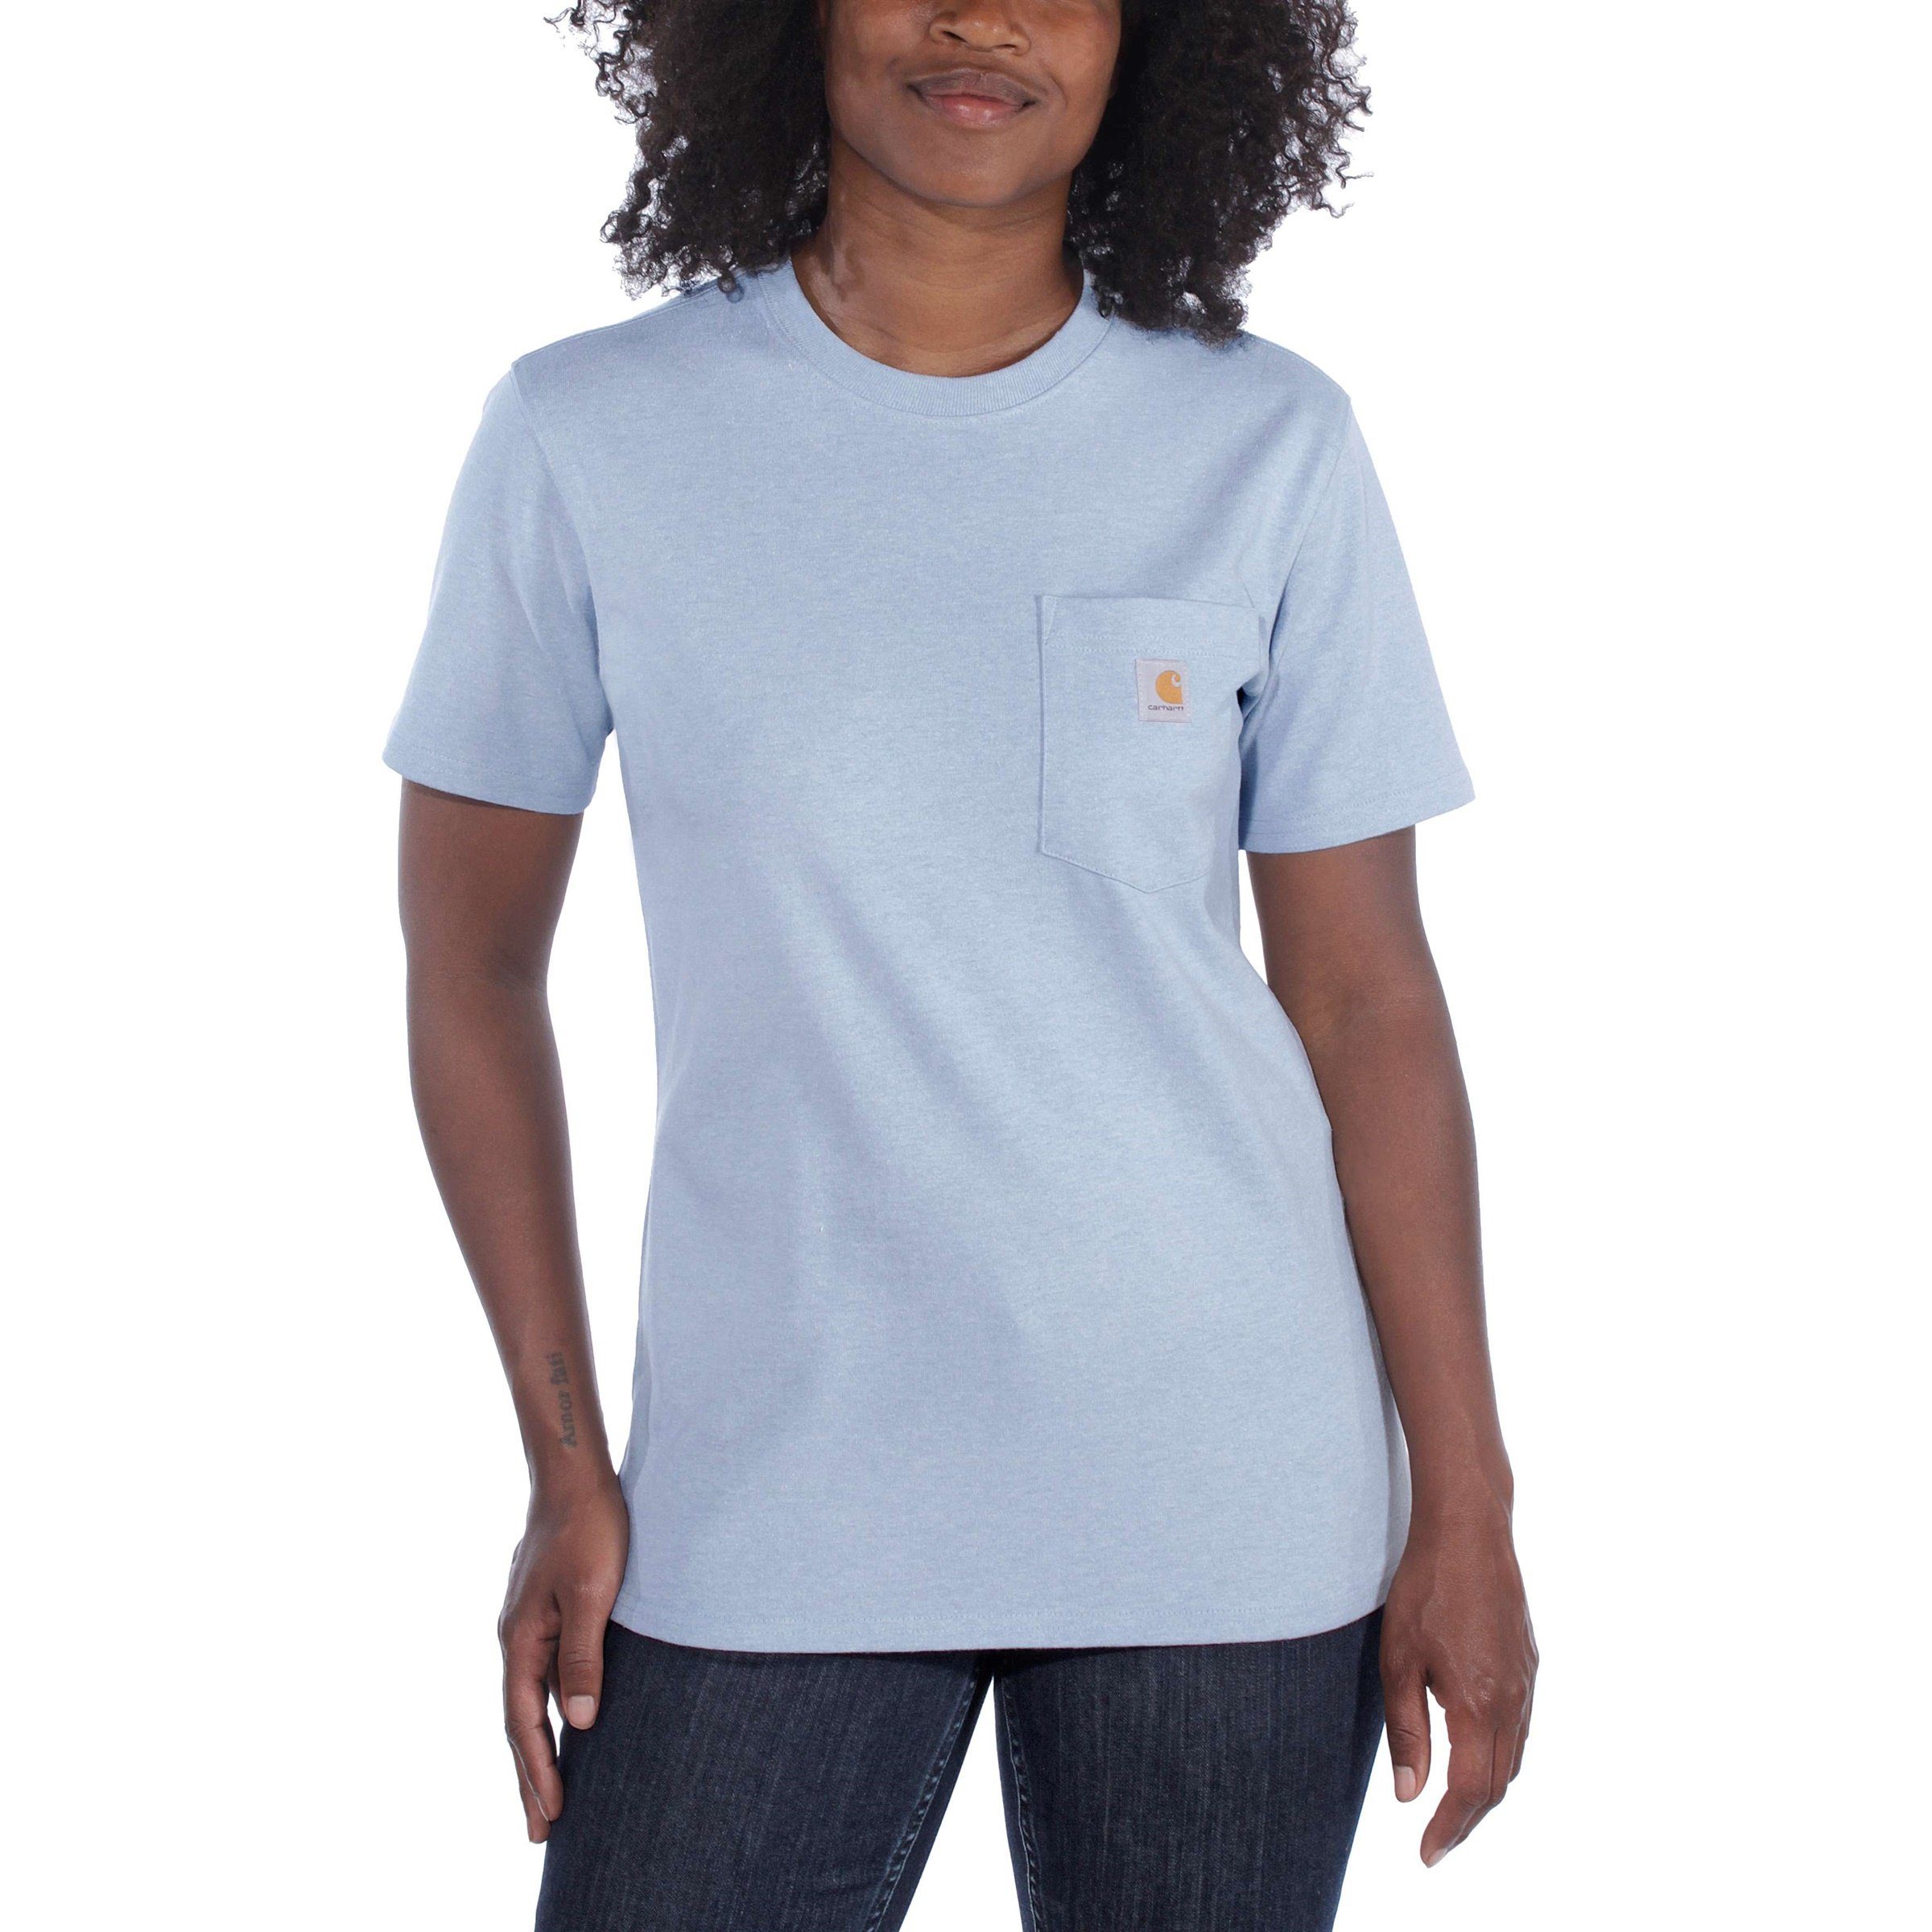 Fit Pocket Damen Carhartt T-Shirt Adult black Heavyweight Carhartt T-Shirt Loose Short-Sleeve